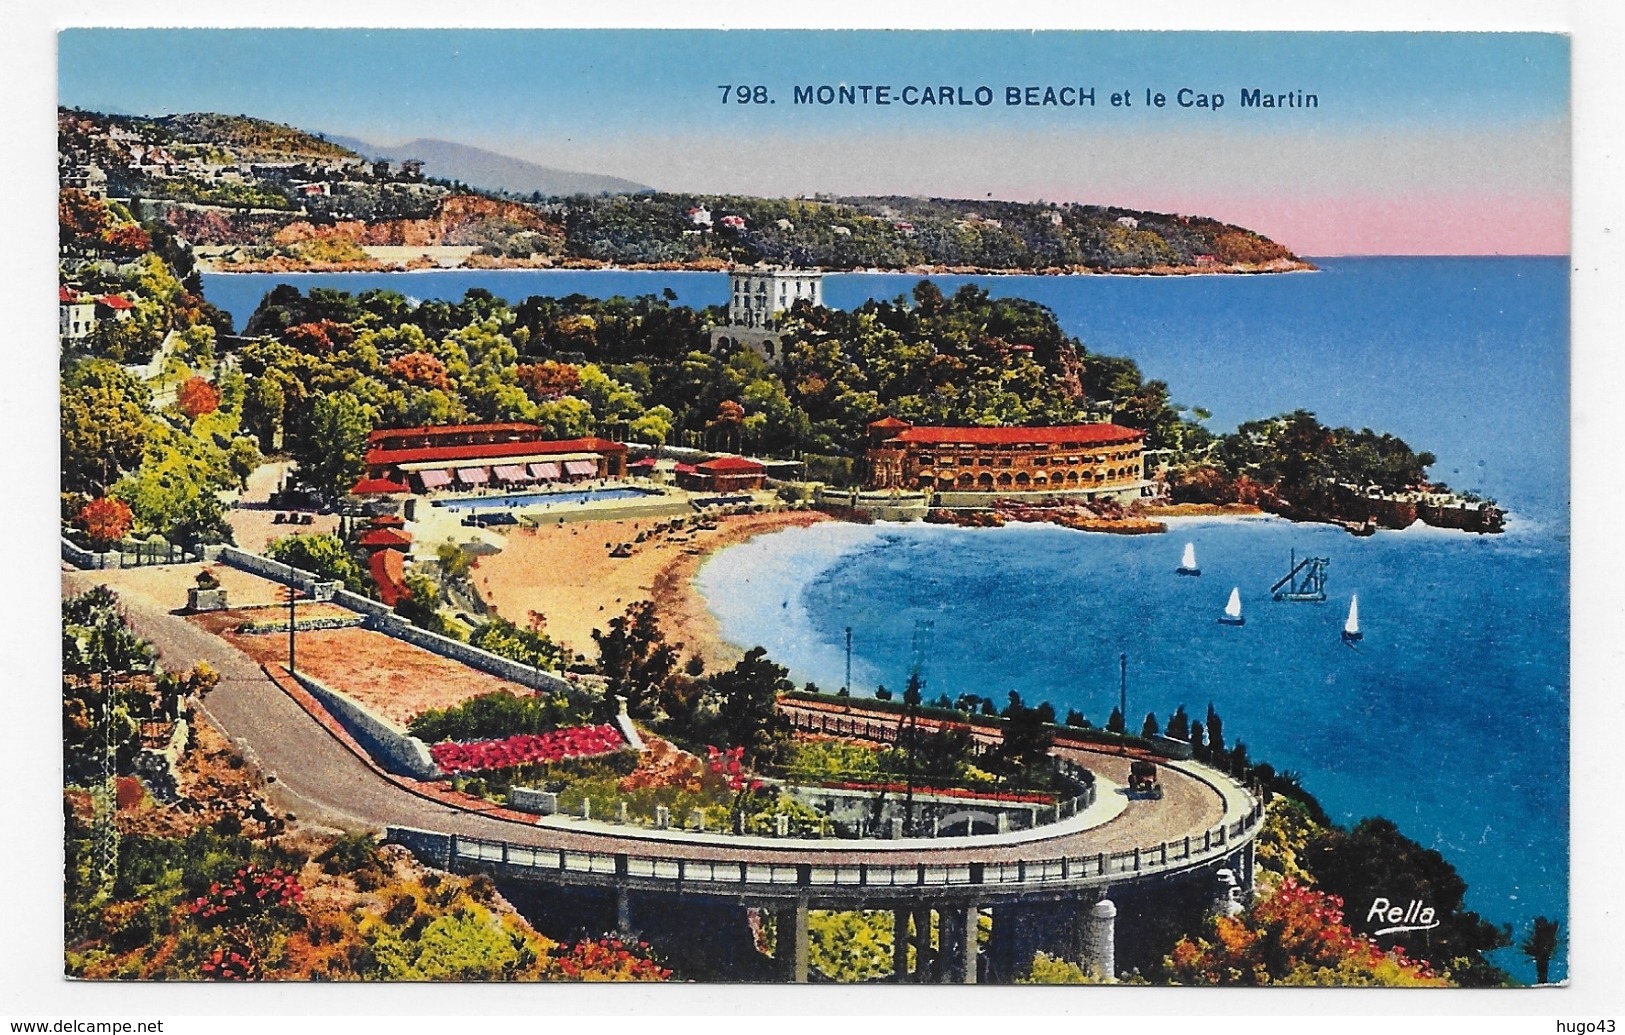 MONTE CARLO BEACH ET LE CAP MARTIN - N° 798 - CPA NON VOYAGEE - Hoteles